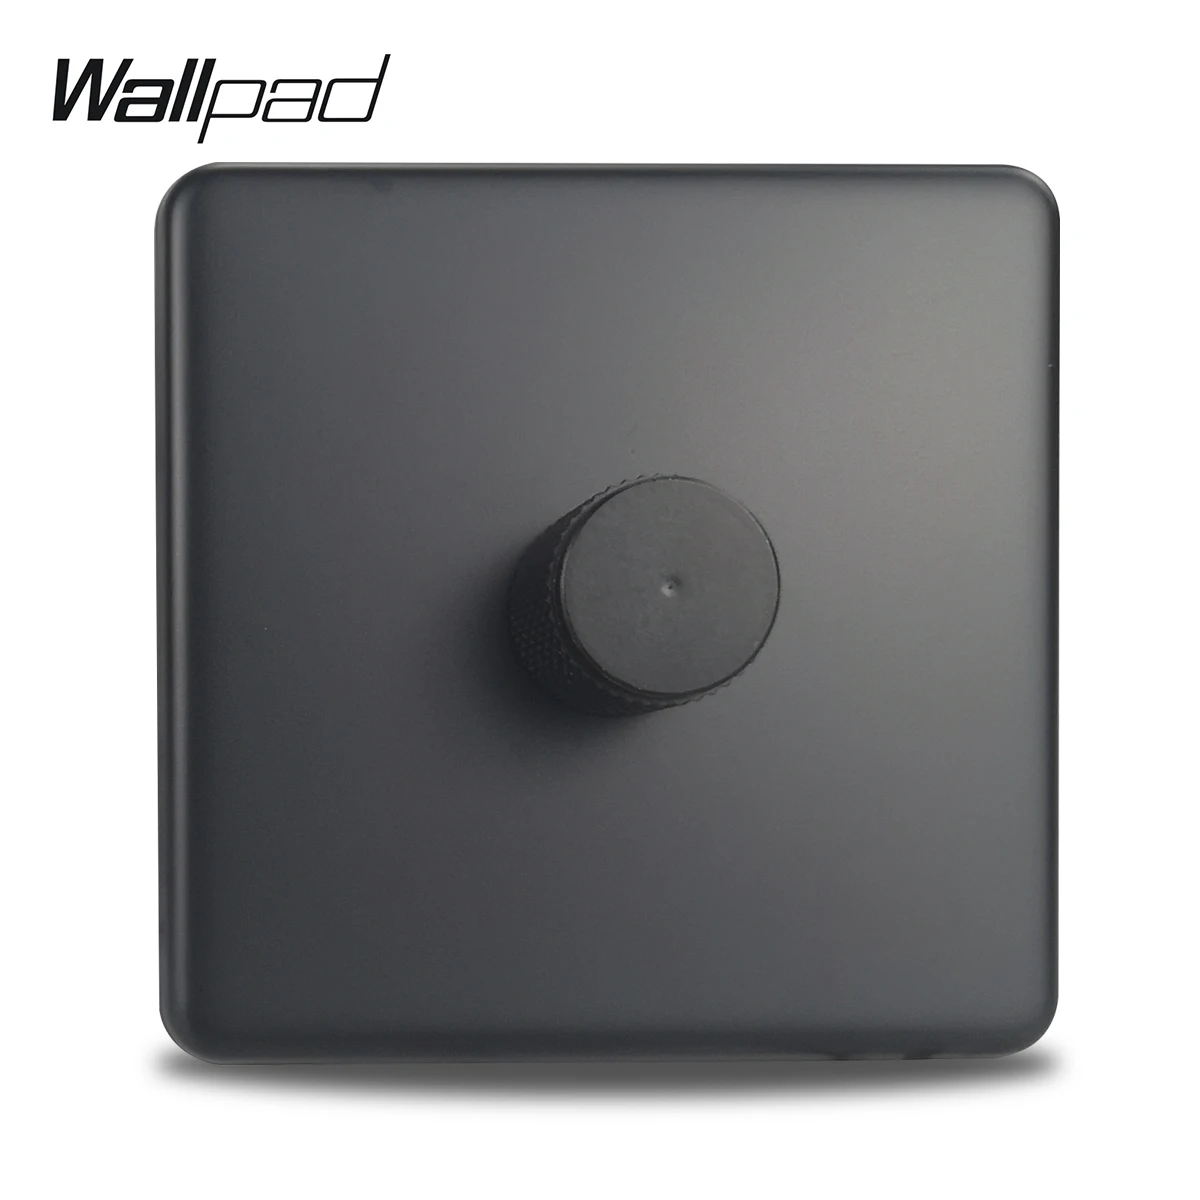 Wallpad LED Свет Диммер настенный переключатель регулятор яркости Черная